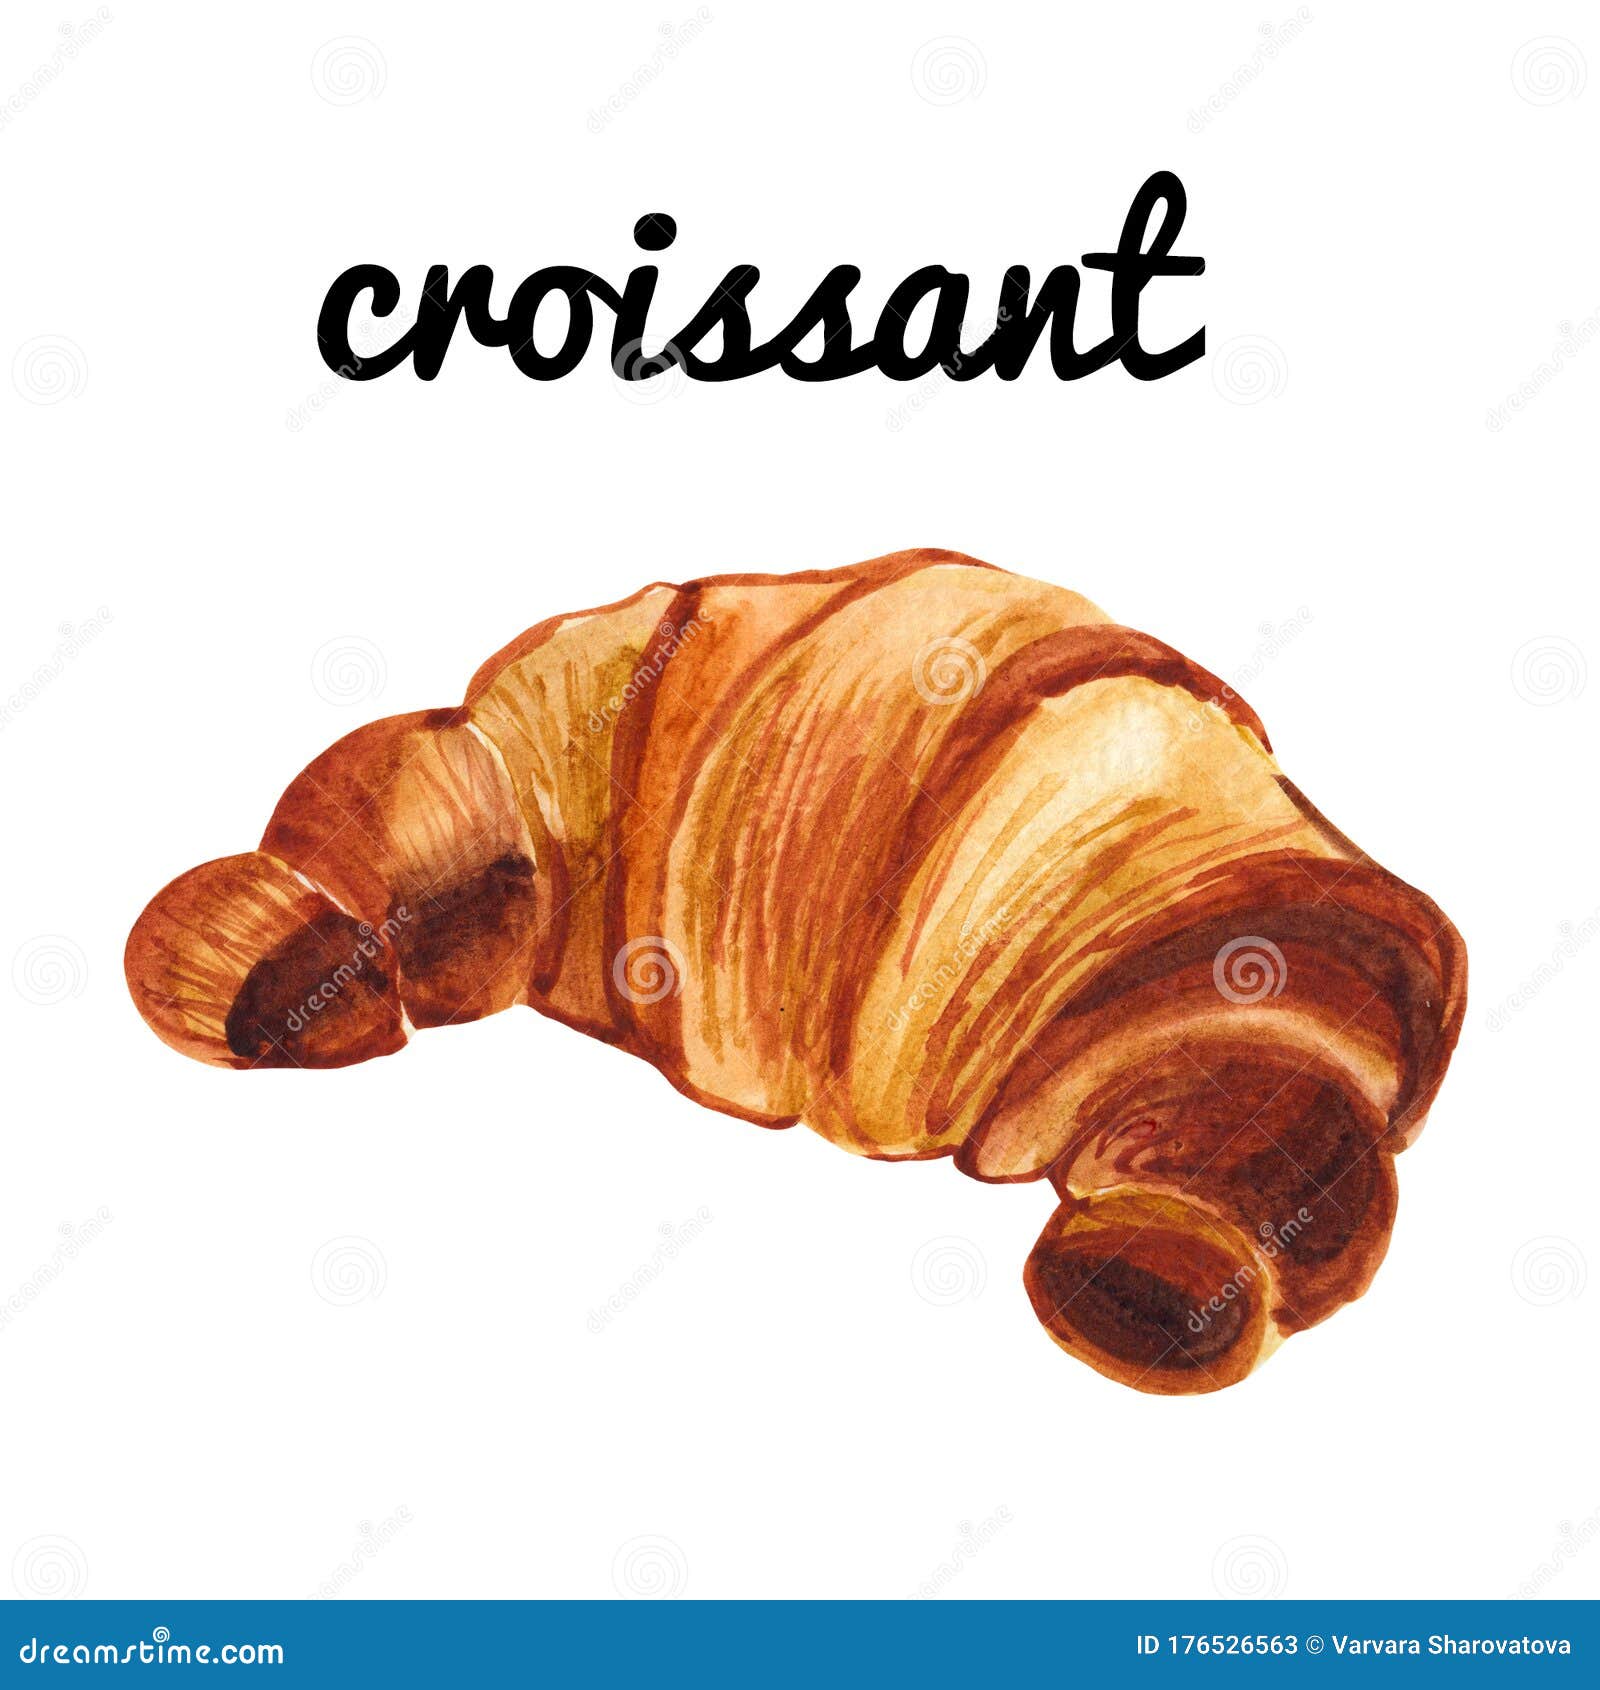 clipart caf�� croissant - photo #44